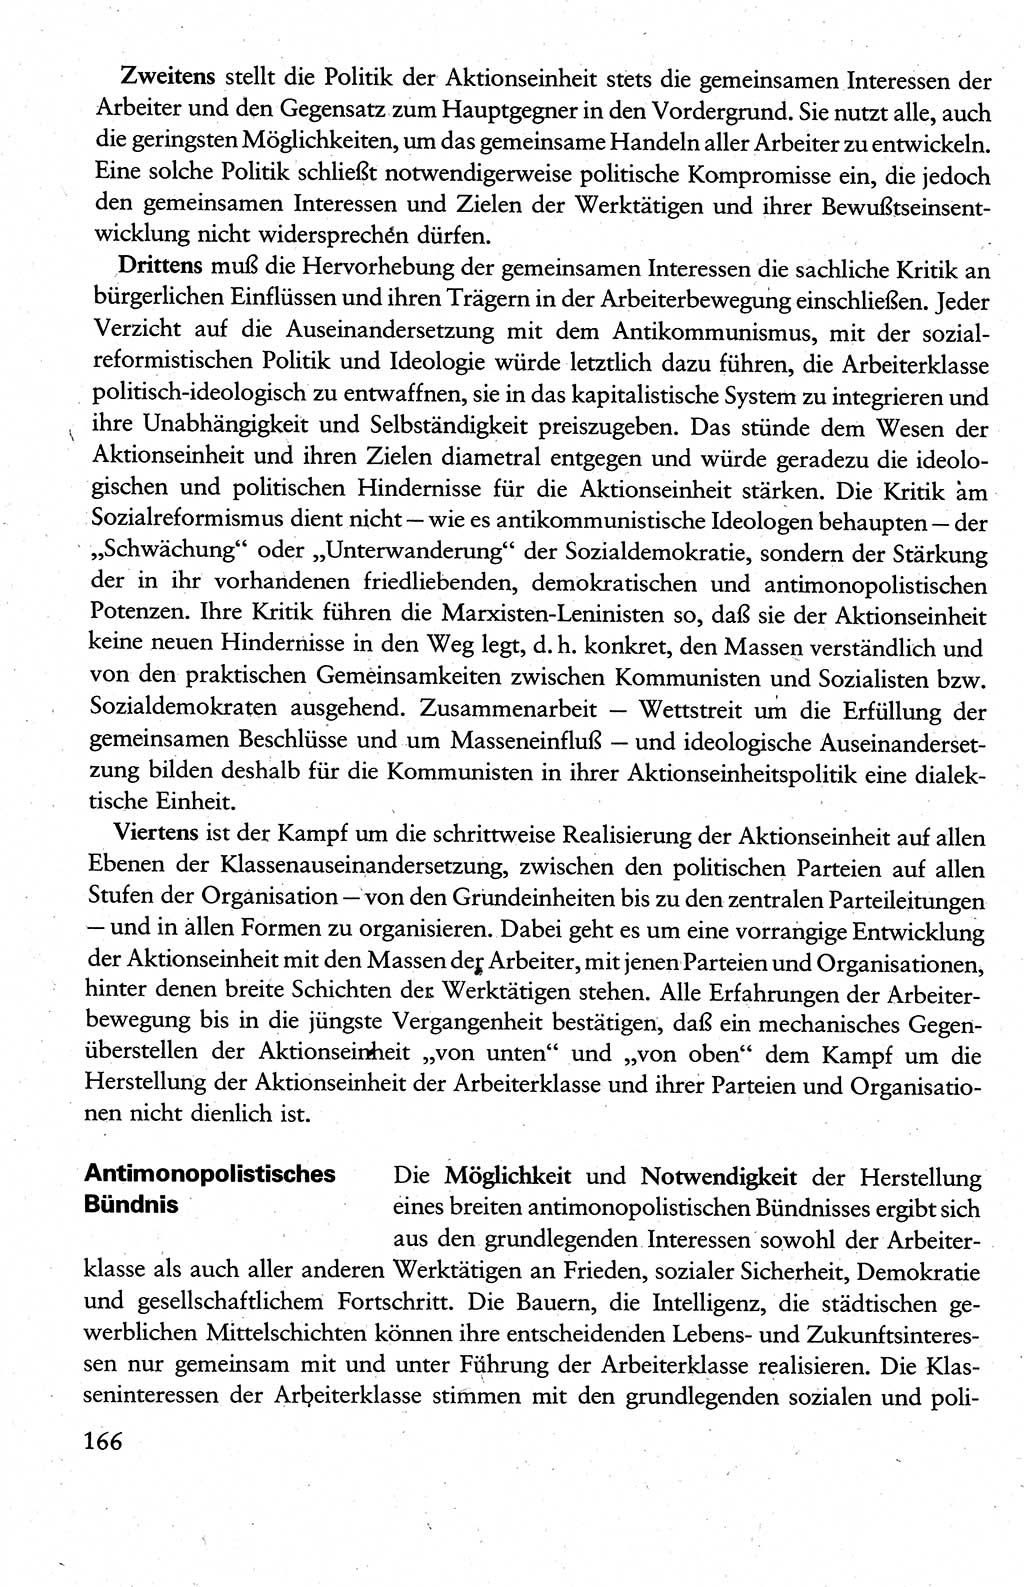 Wissenschaftlicher Kommunismus [Deutsche Demokratische Republik (DDR)], Lehrbuch für das marxistisch-leninistische Grundlagenstudium 1983, Seite 166 (Wiss. Komm. DDR Lb. 1983, S. 166)